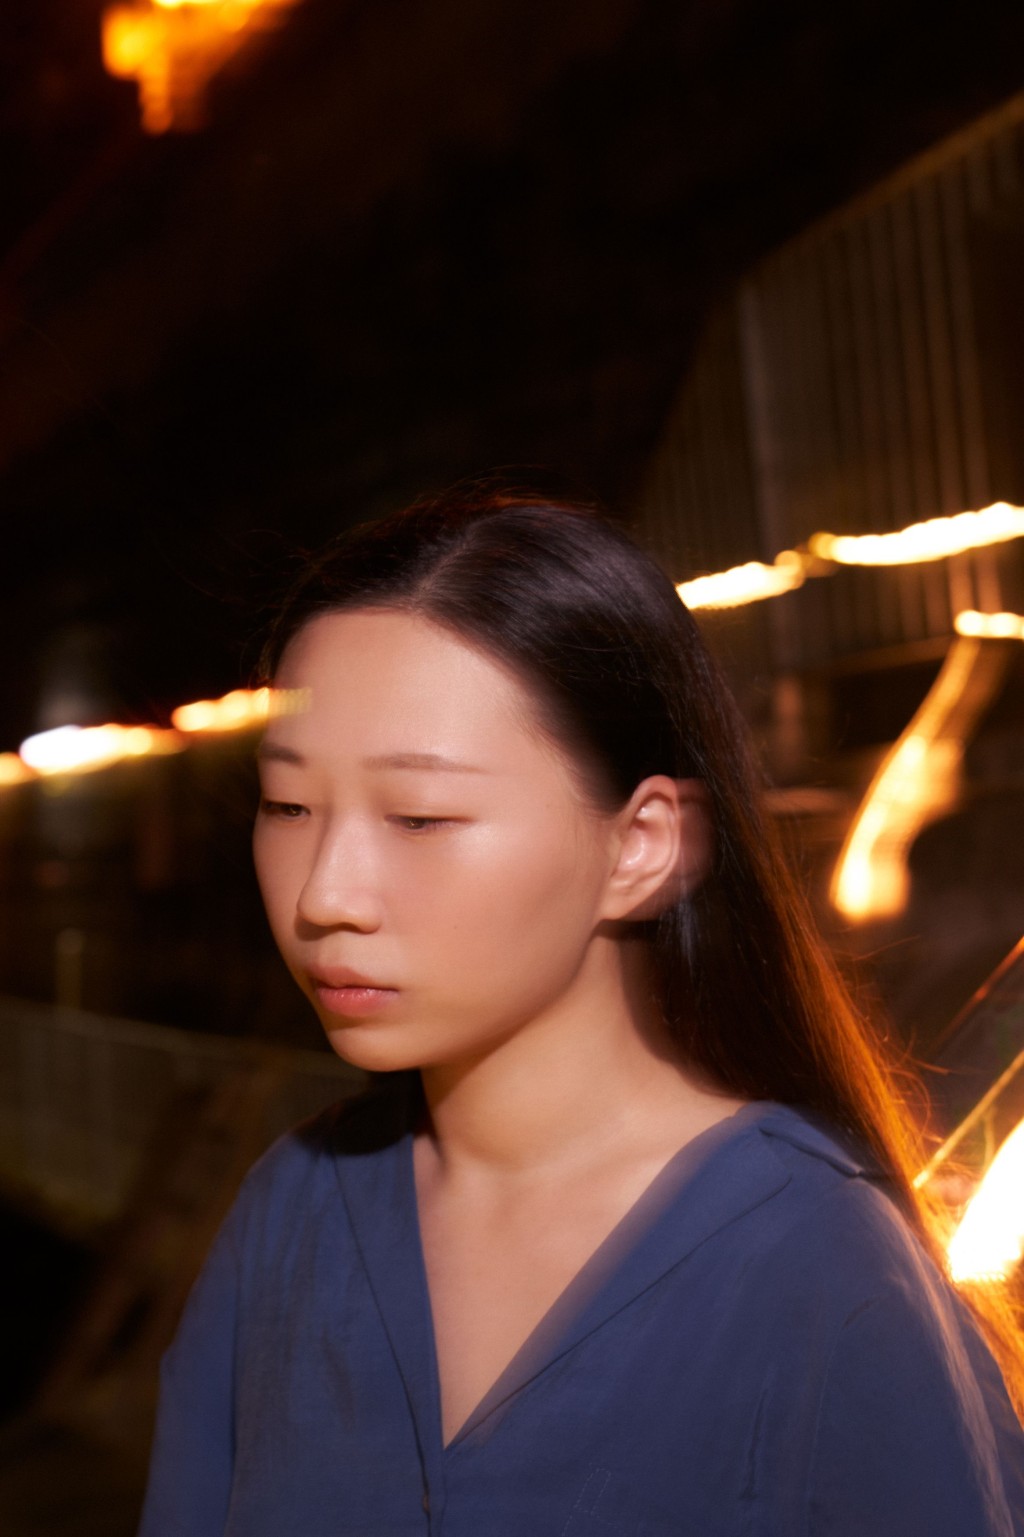 香港夜市｜夜間藝術展覽《都市物種》藝術家袁雅芝的作品《間尺與玻璃》的靈感來自她的童年回憶 — 一段和家人短暫寄居在親戚家中數年的經歷。